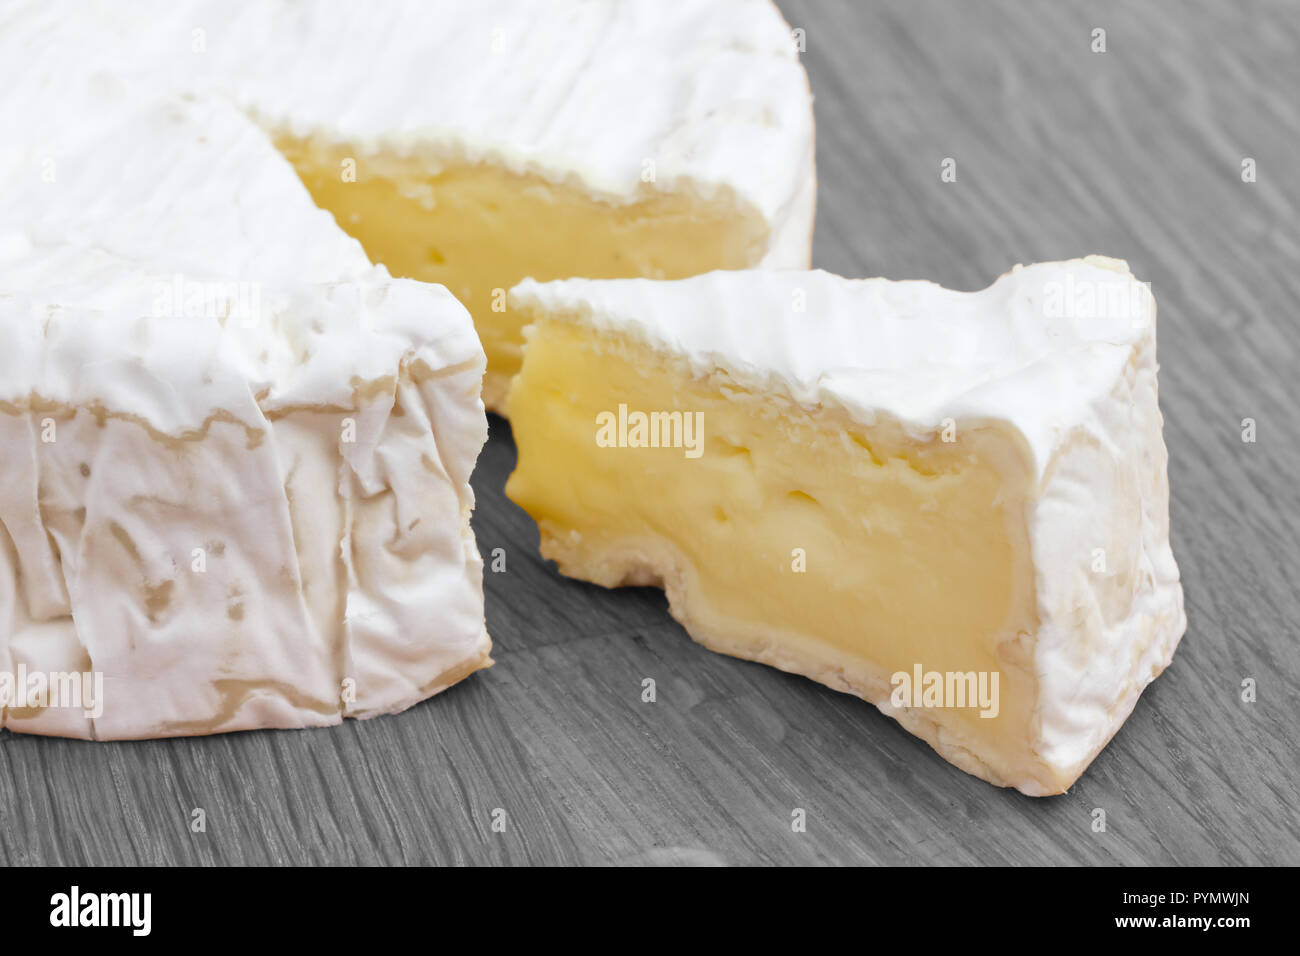 Tranche de fromage blanc coupé d'un grand rond sur une surface en bois. Banque D'Images